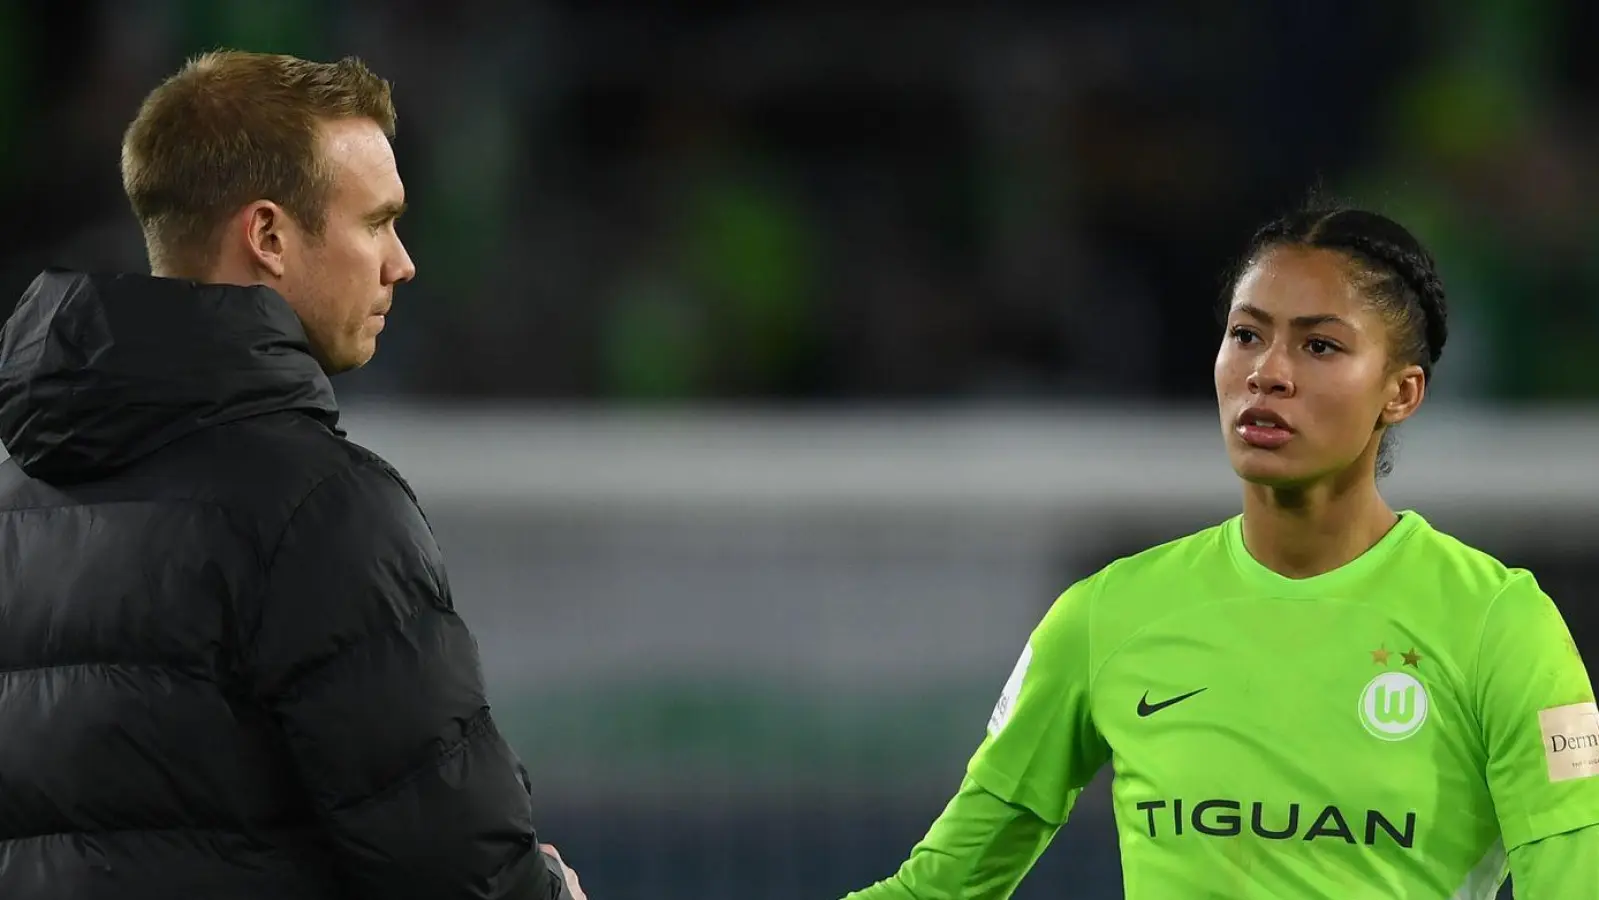 Die Wolfsburgerin Sveindis Jonsdottir klatscht nach dem Spiel mit VfL-Trainer Tommy Stroot ab. (Foto: Swen Pförtner/dpa)